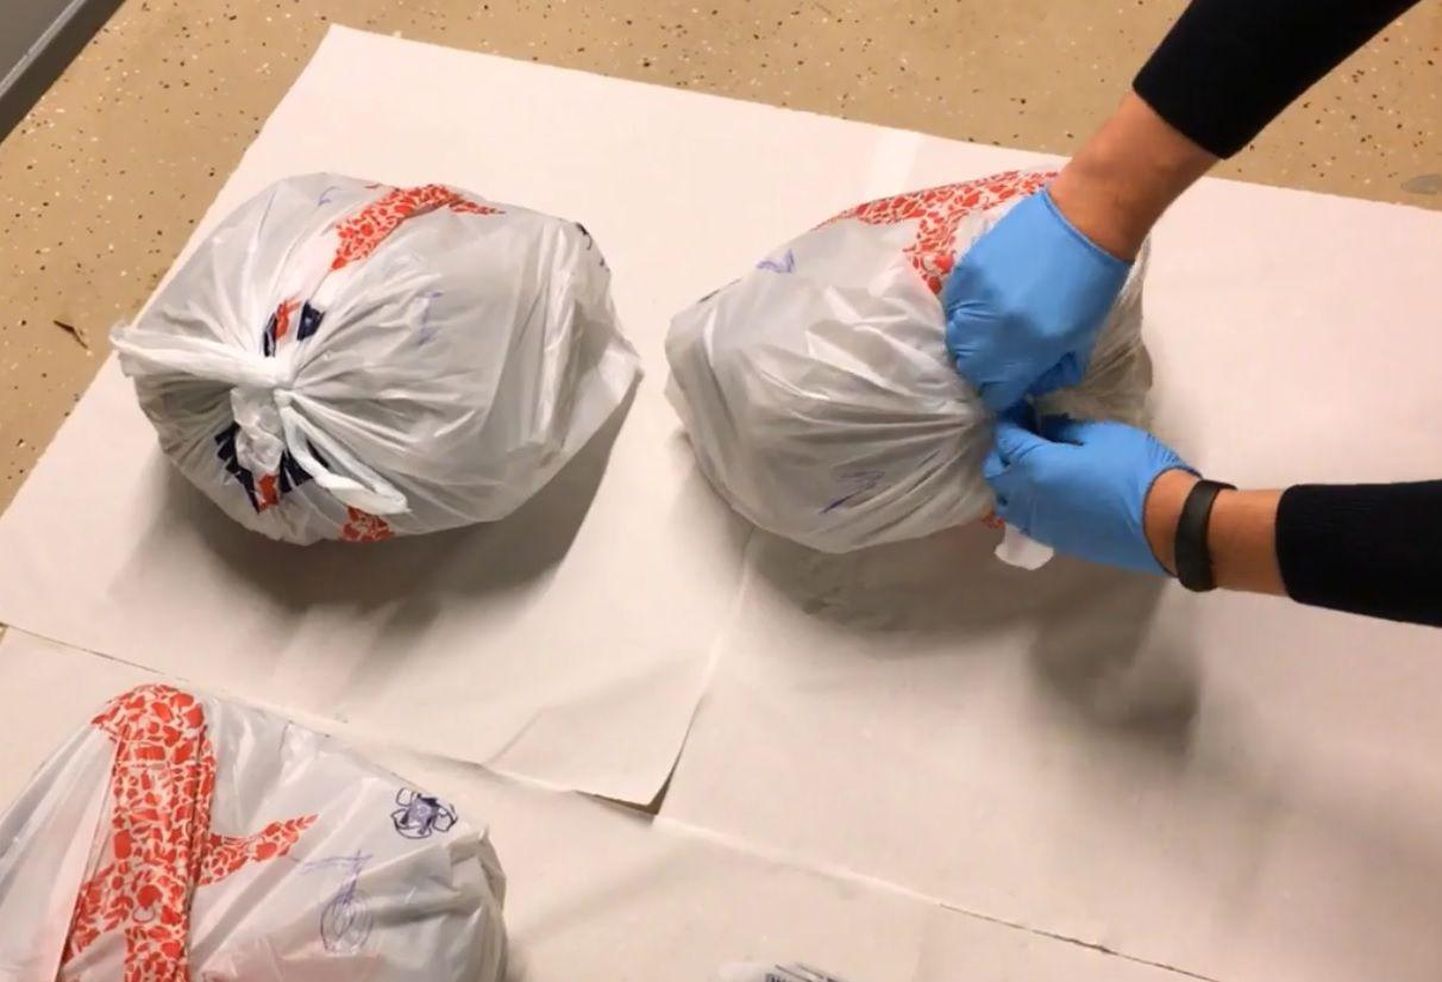 Работники службы по борьбе с наркотиками 1 ноября прошлого года в частном доме в Маарду обнаружили более 13 кг марихуаны, которая была упакована в пакеты  Maxima.